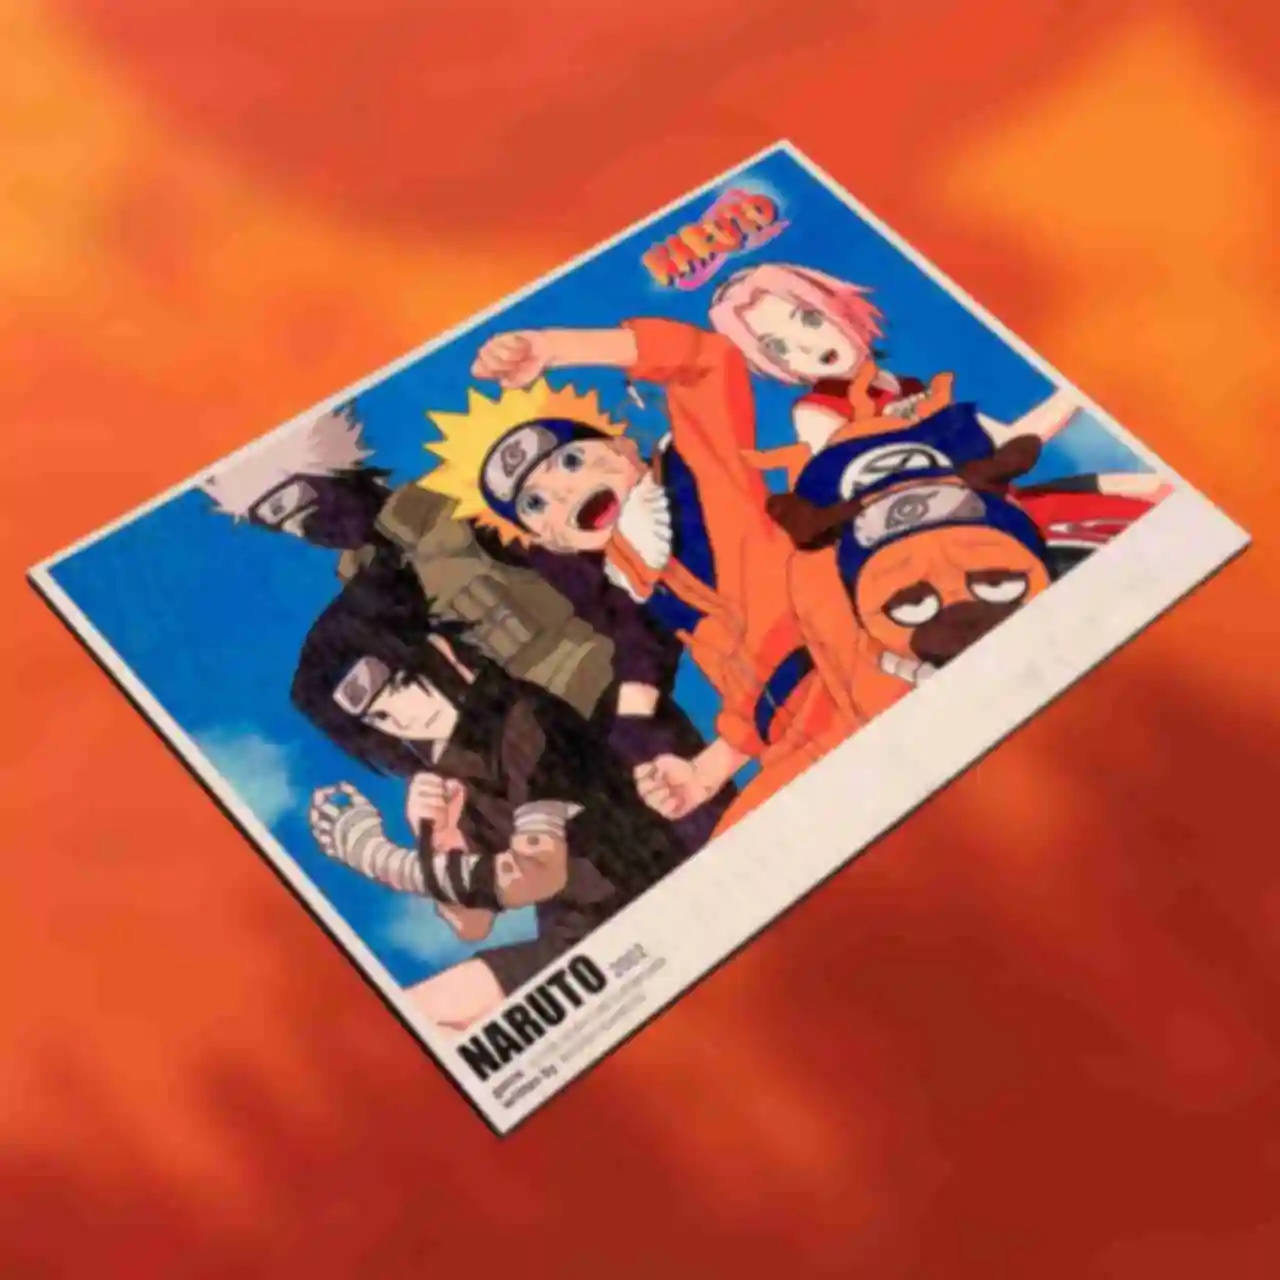 Деревянный постер №2 ⦁ Друзья ⦁ Наруто, Саскє, Сакура, Какаши ⦁ Плакат Команда 7 ⦁ Сувениры Наруто ⦁ Подарки в стиле аниме Naruto. Фото №78